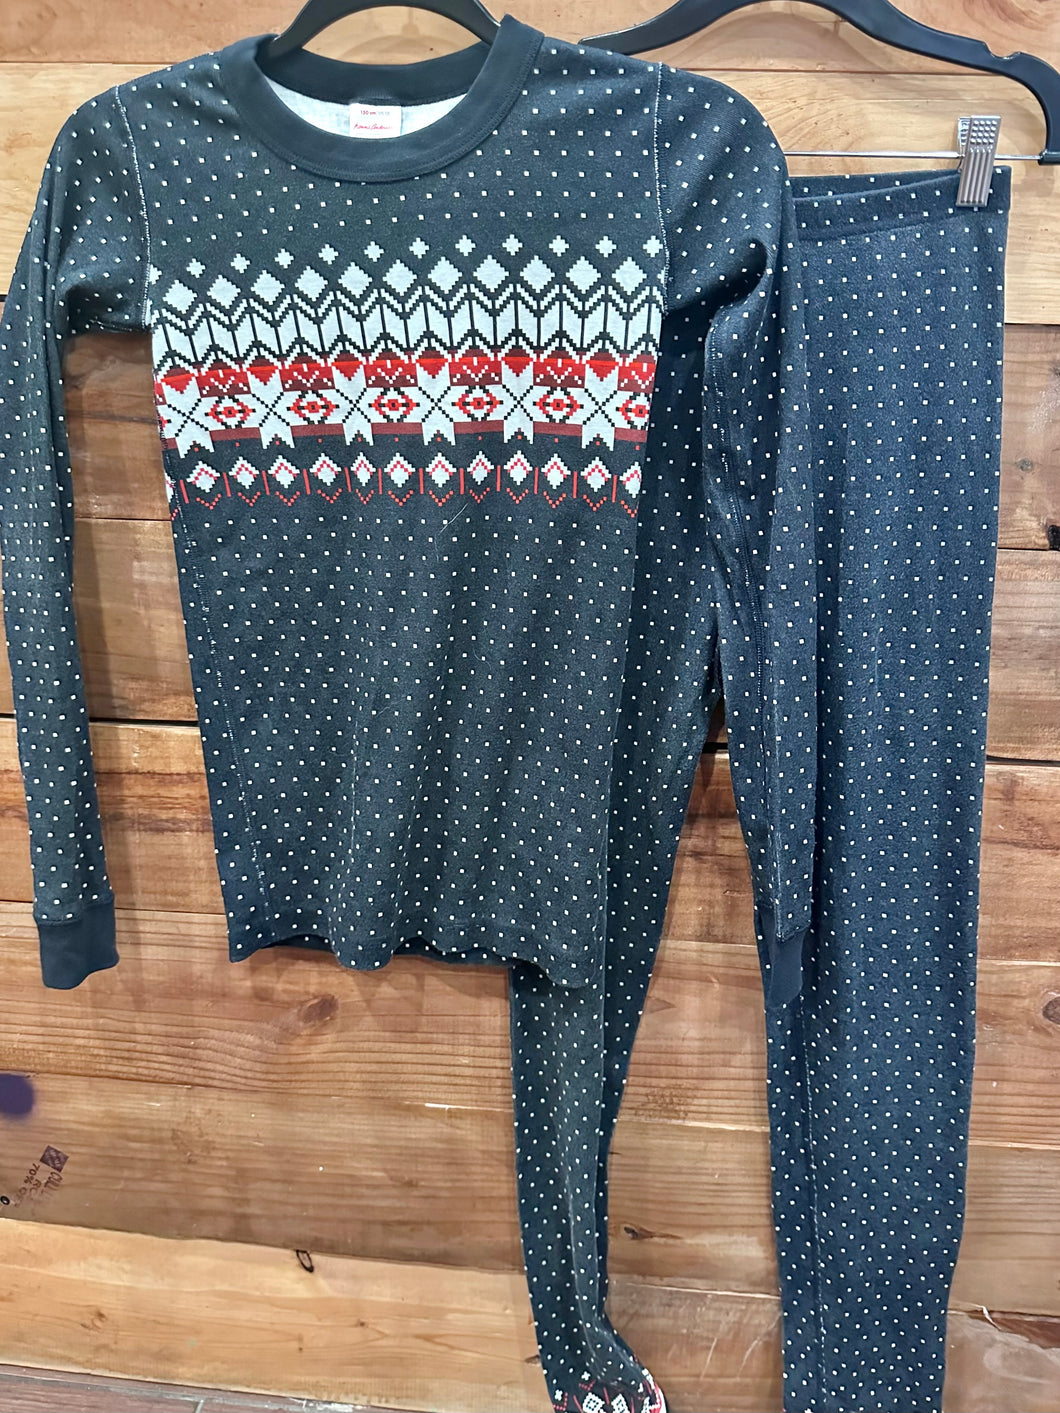 Hanna Andersson Snowflake Pajamas Size 12